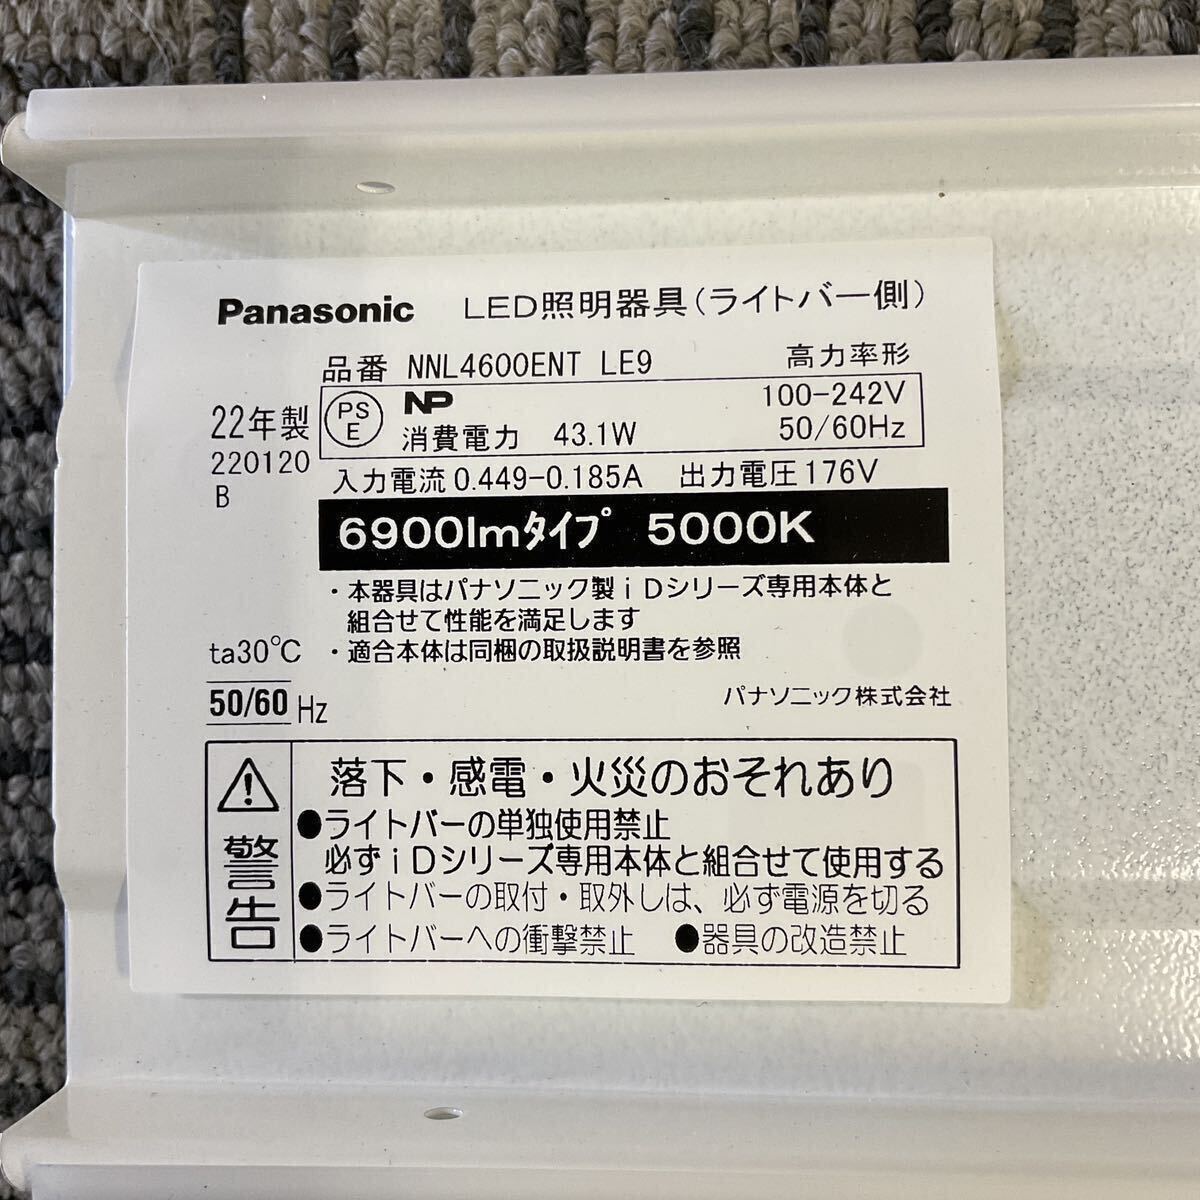 営YY111-160Y 新品未開封 Panasonic パナソニック LED照明器具 NNL4600ENT LE9 LEDライトバー 昼白色 _画像8